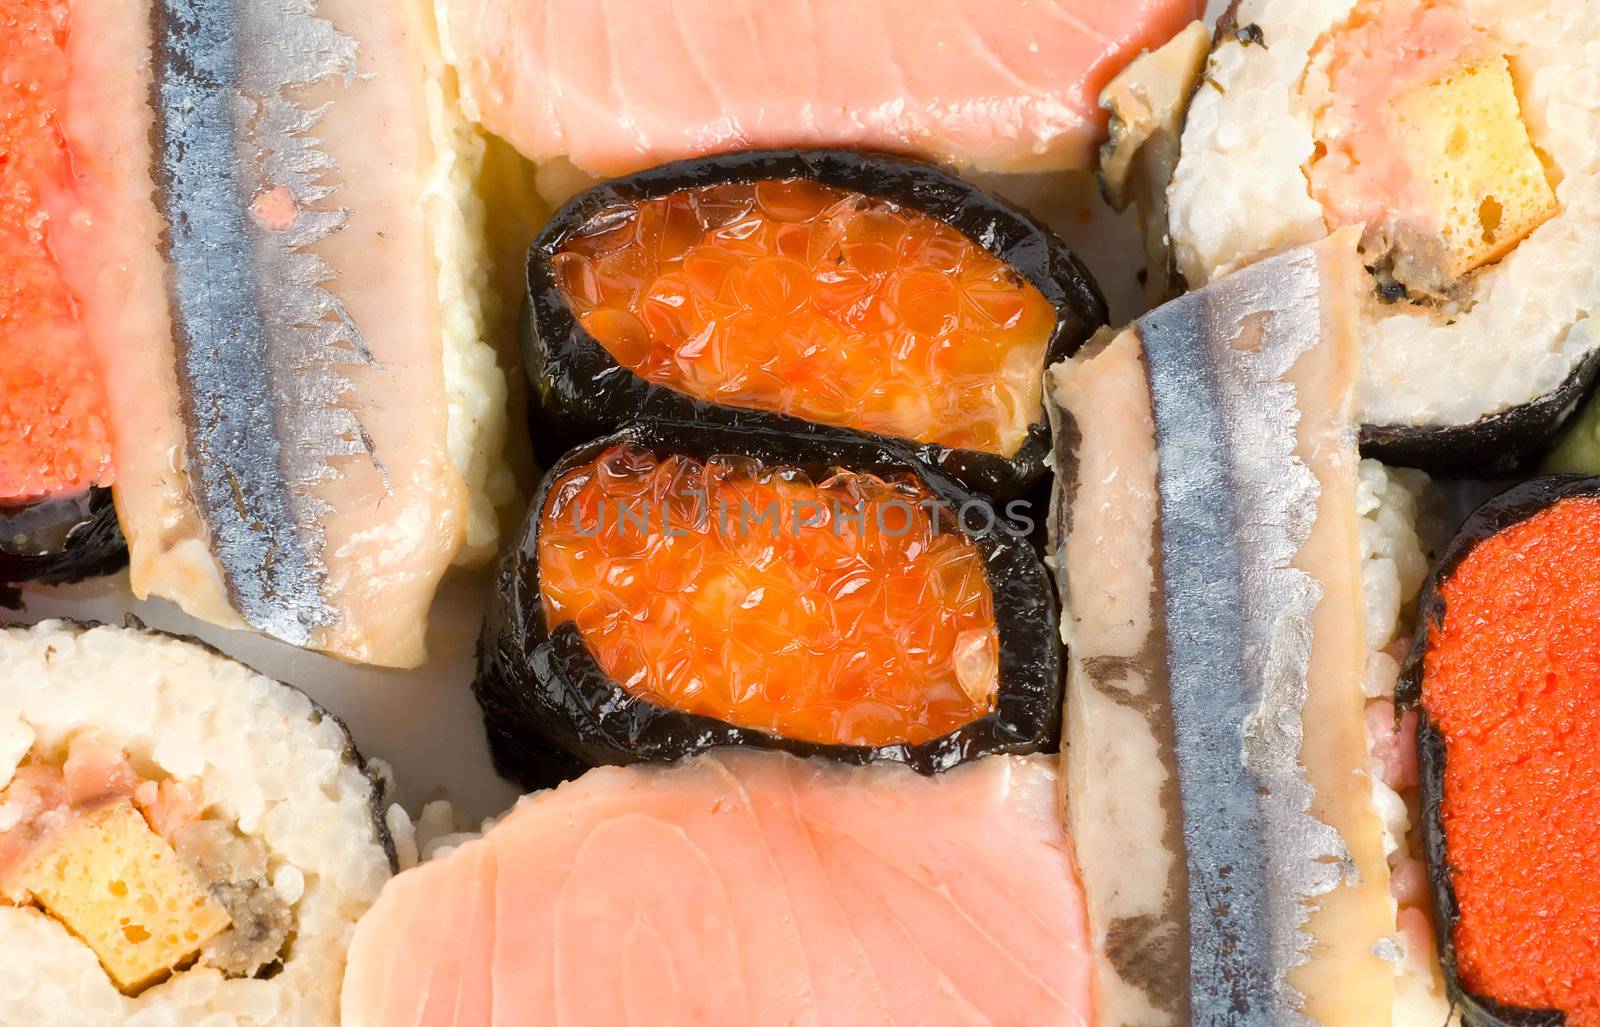 Japanese fresh sushi by Givaga